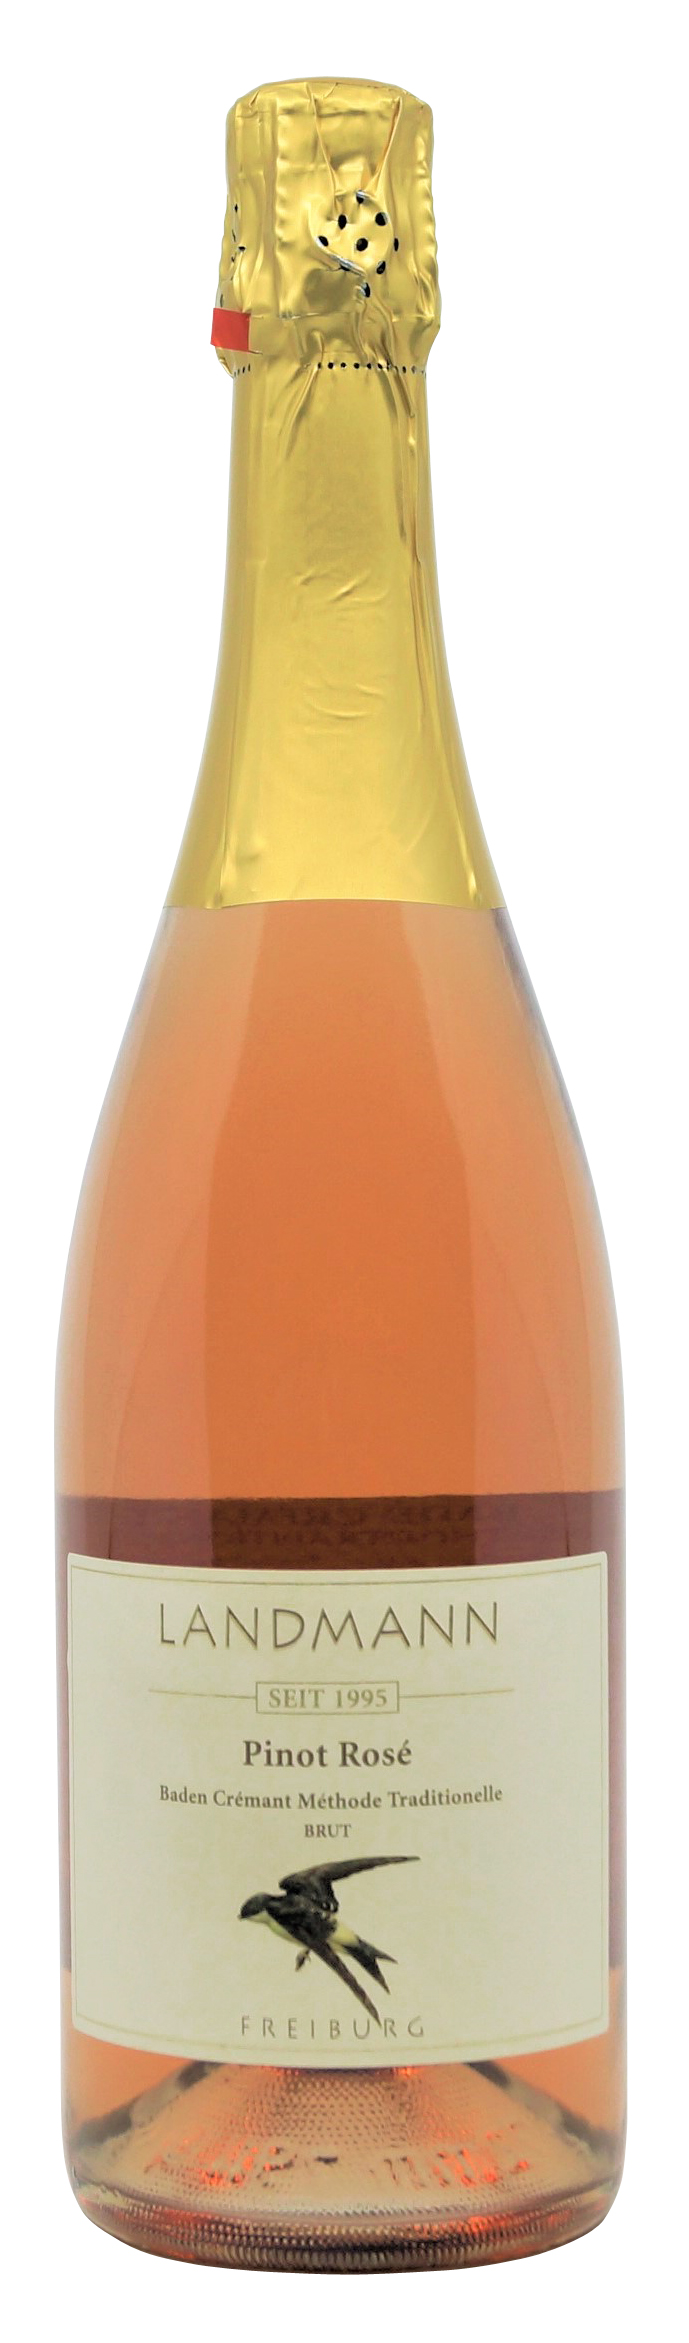 Pinot Rosé Brut Baden vom Weingut Landmann aus Waltershofen, 0,75 l Flasche (18,53 €/Liter)